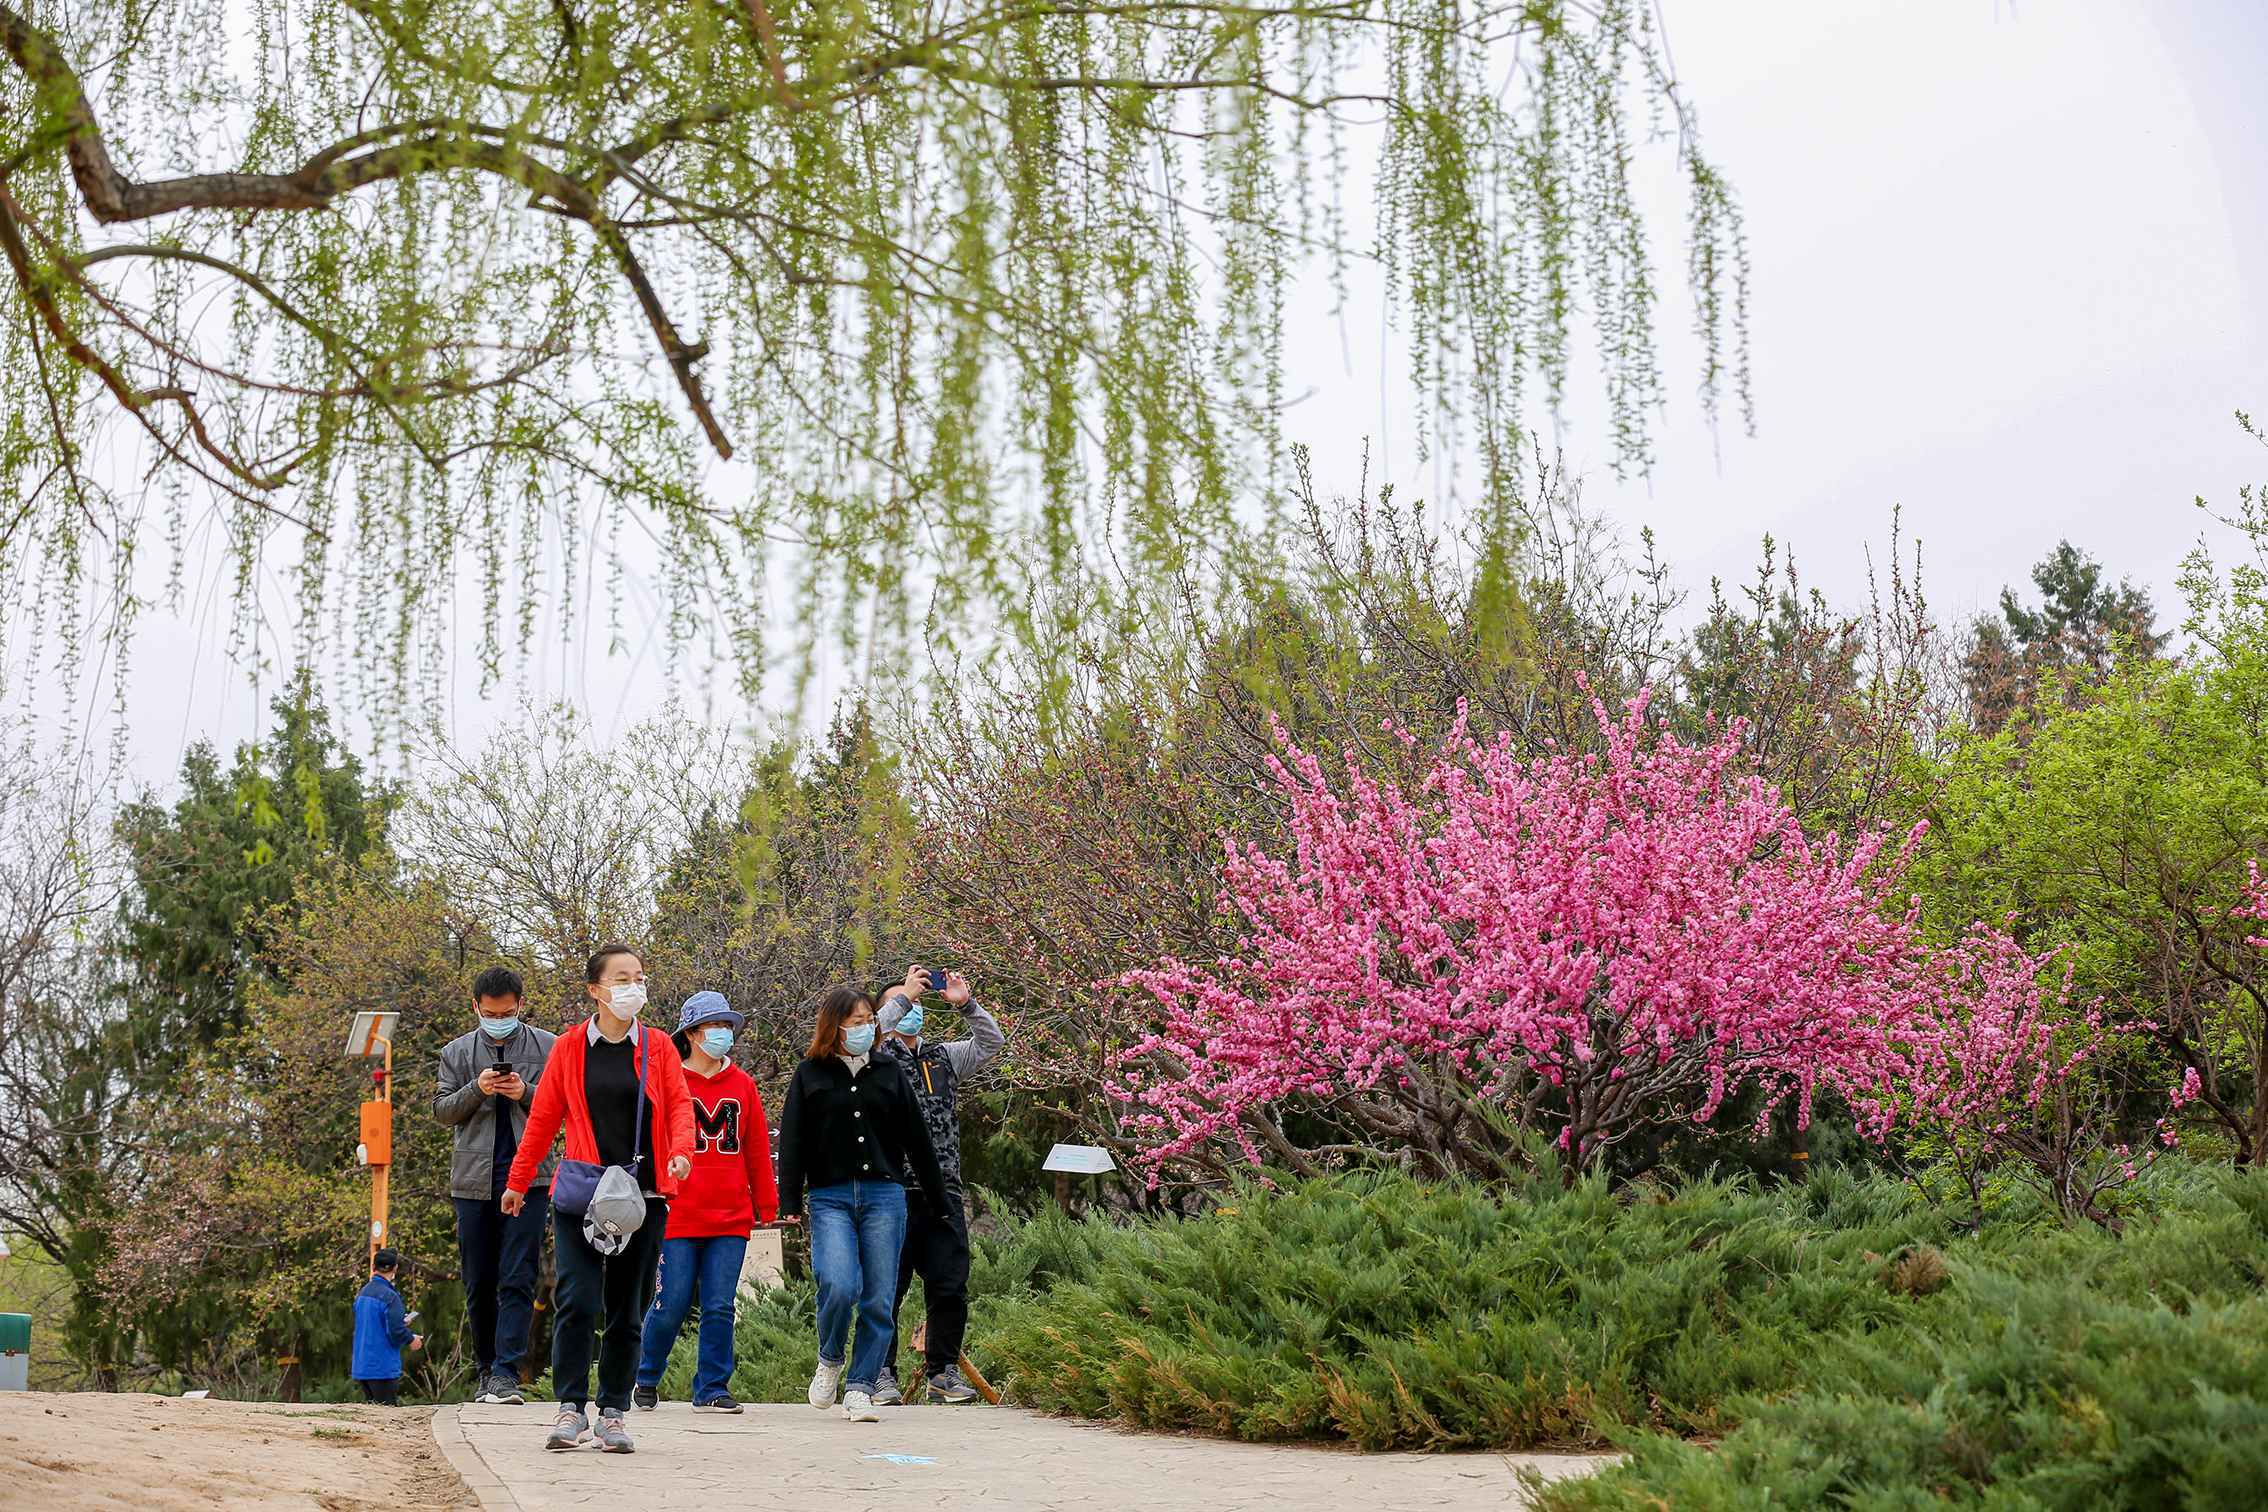 五一小长假北京公园风景区接待游客768万人次